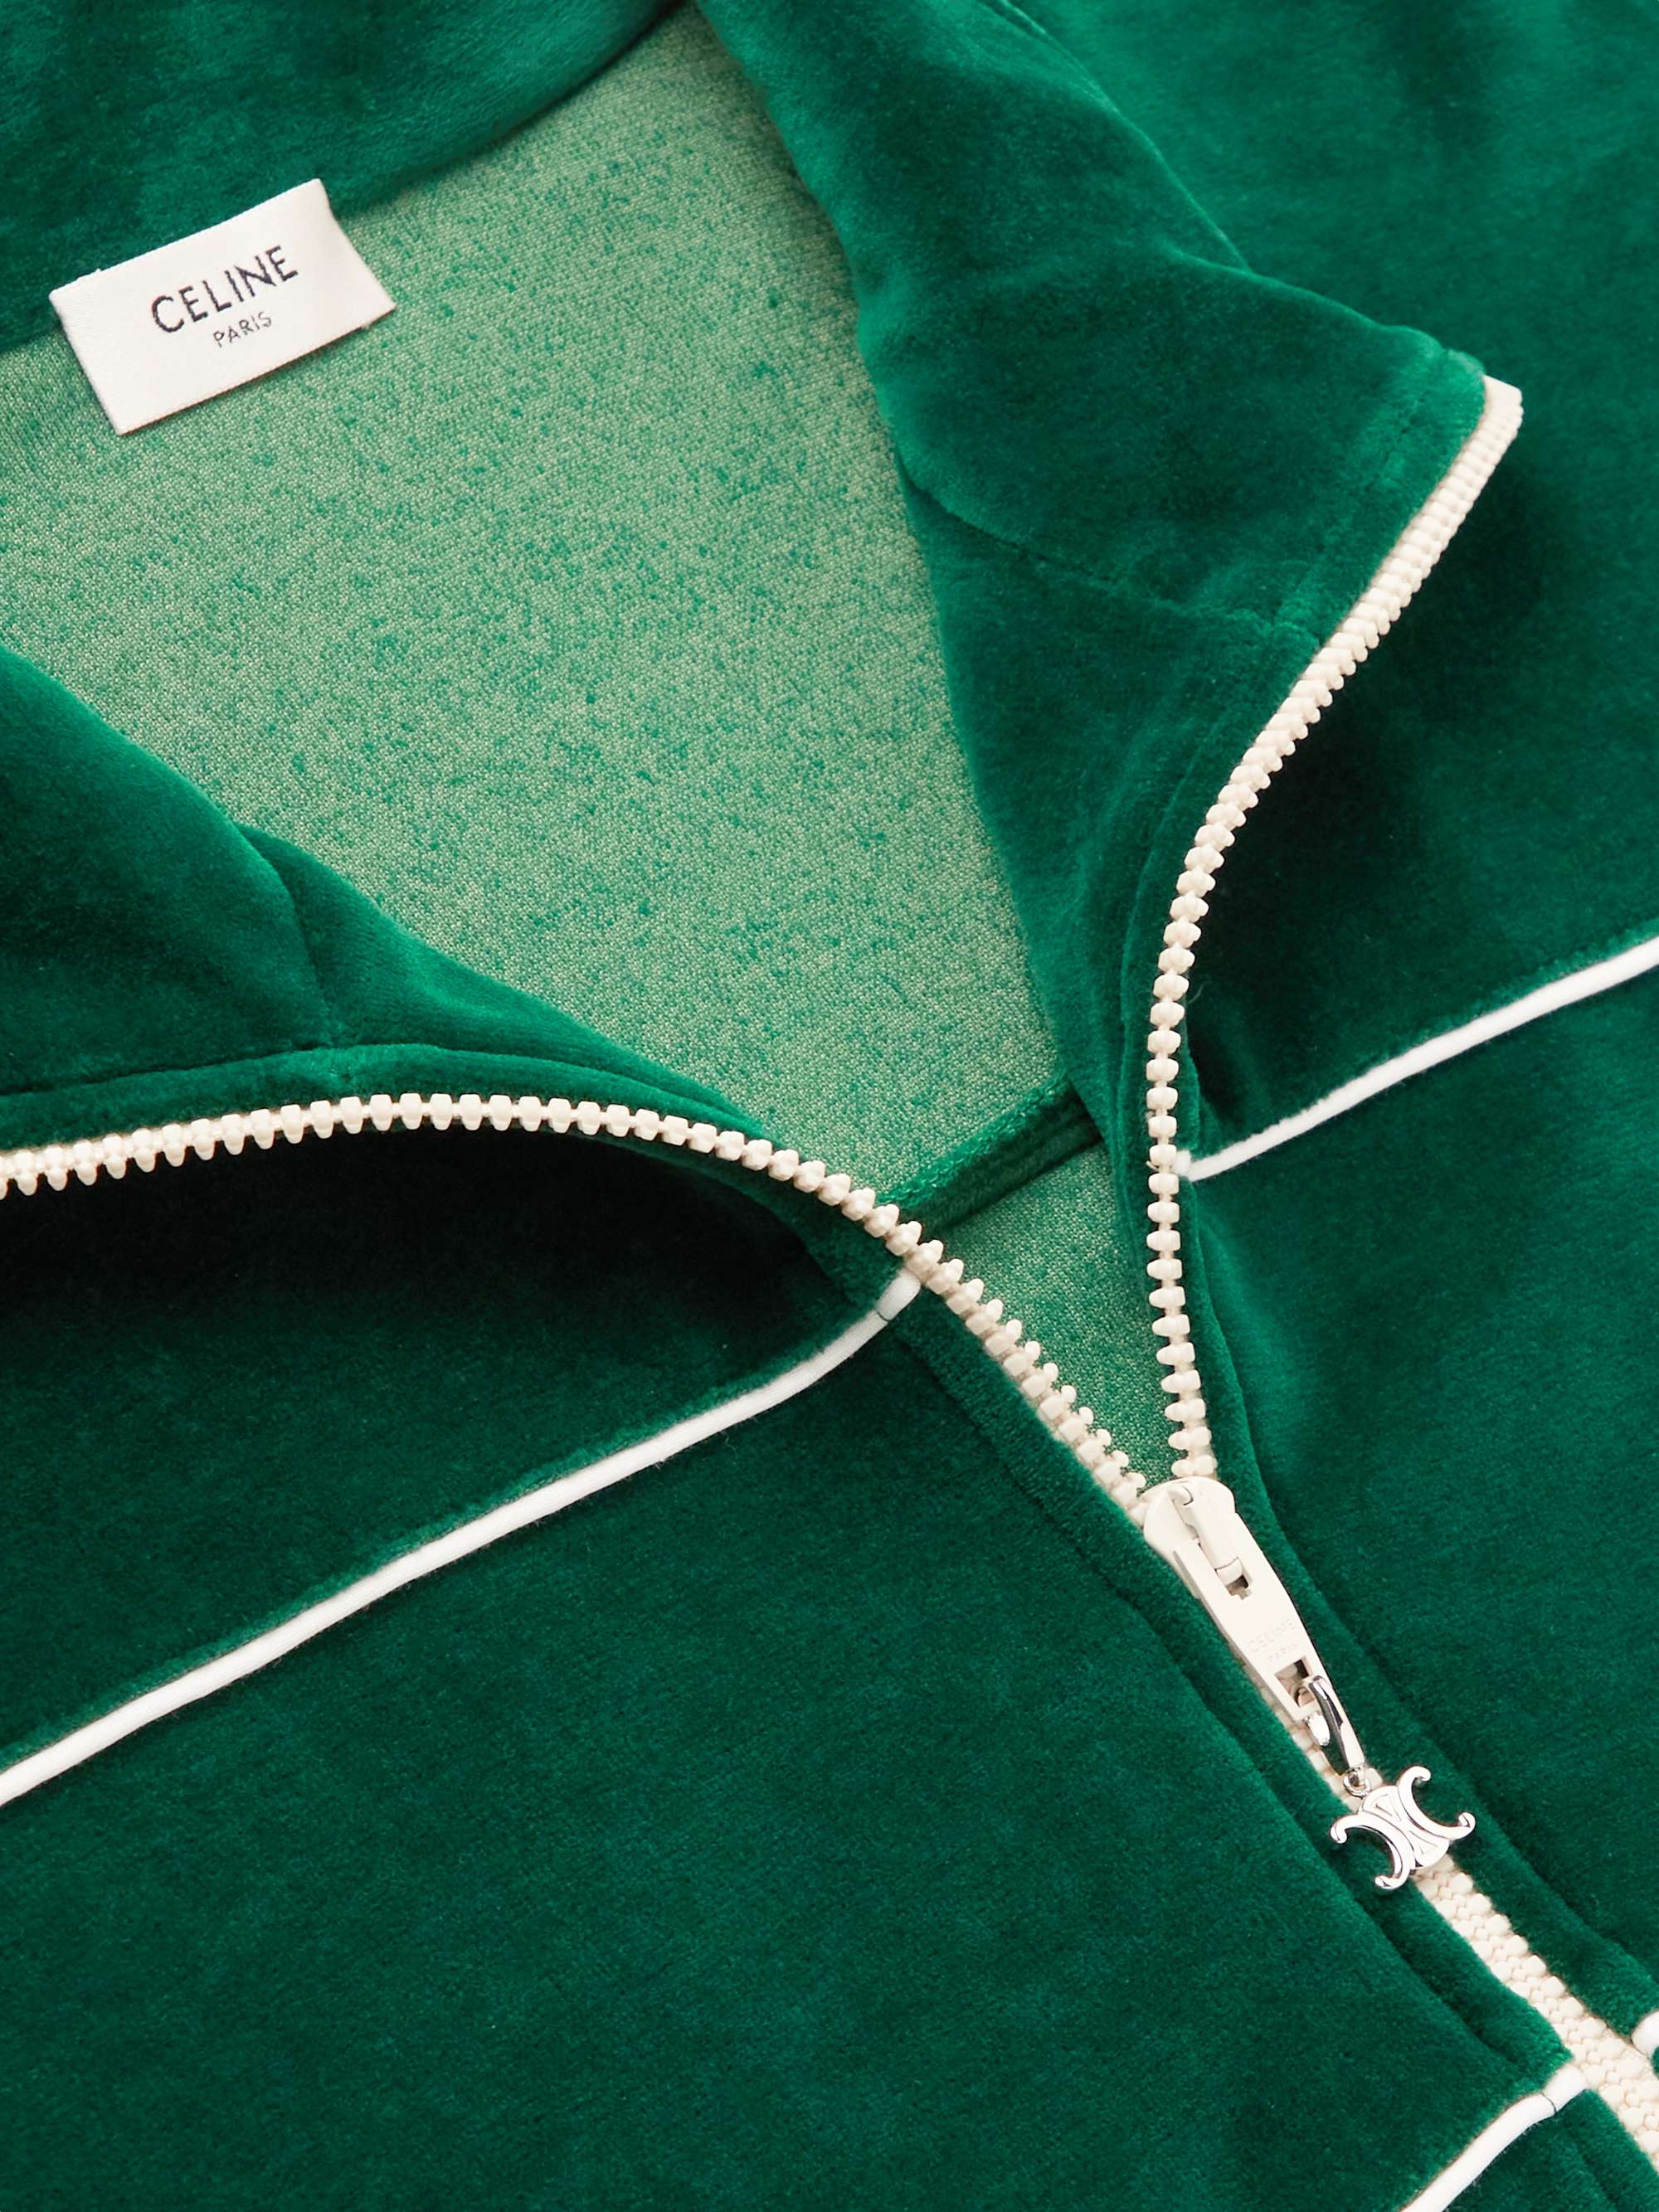 CELINE HOMME Logo-Embroidered Cotton-Blend Velour Track Jacket